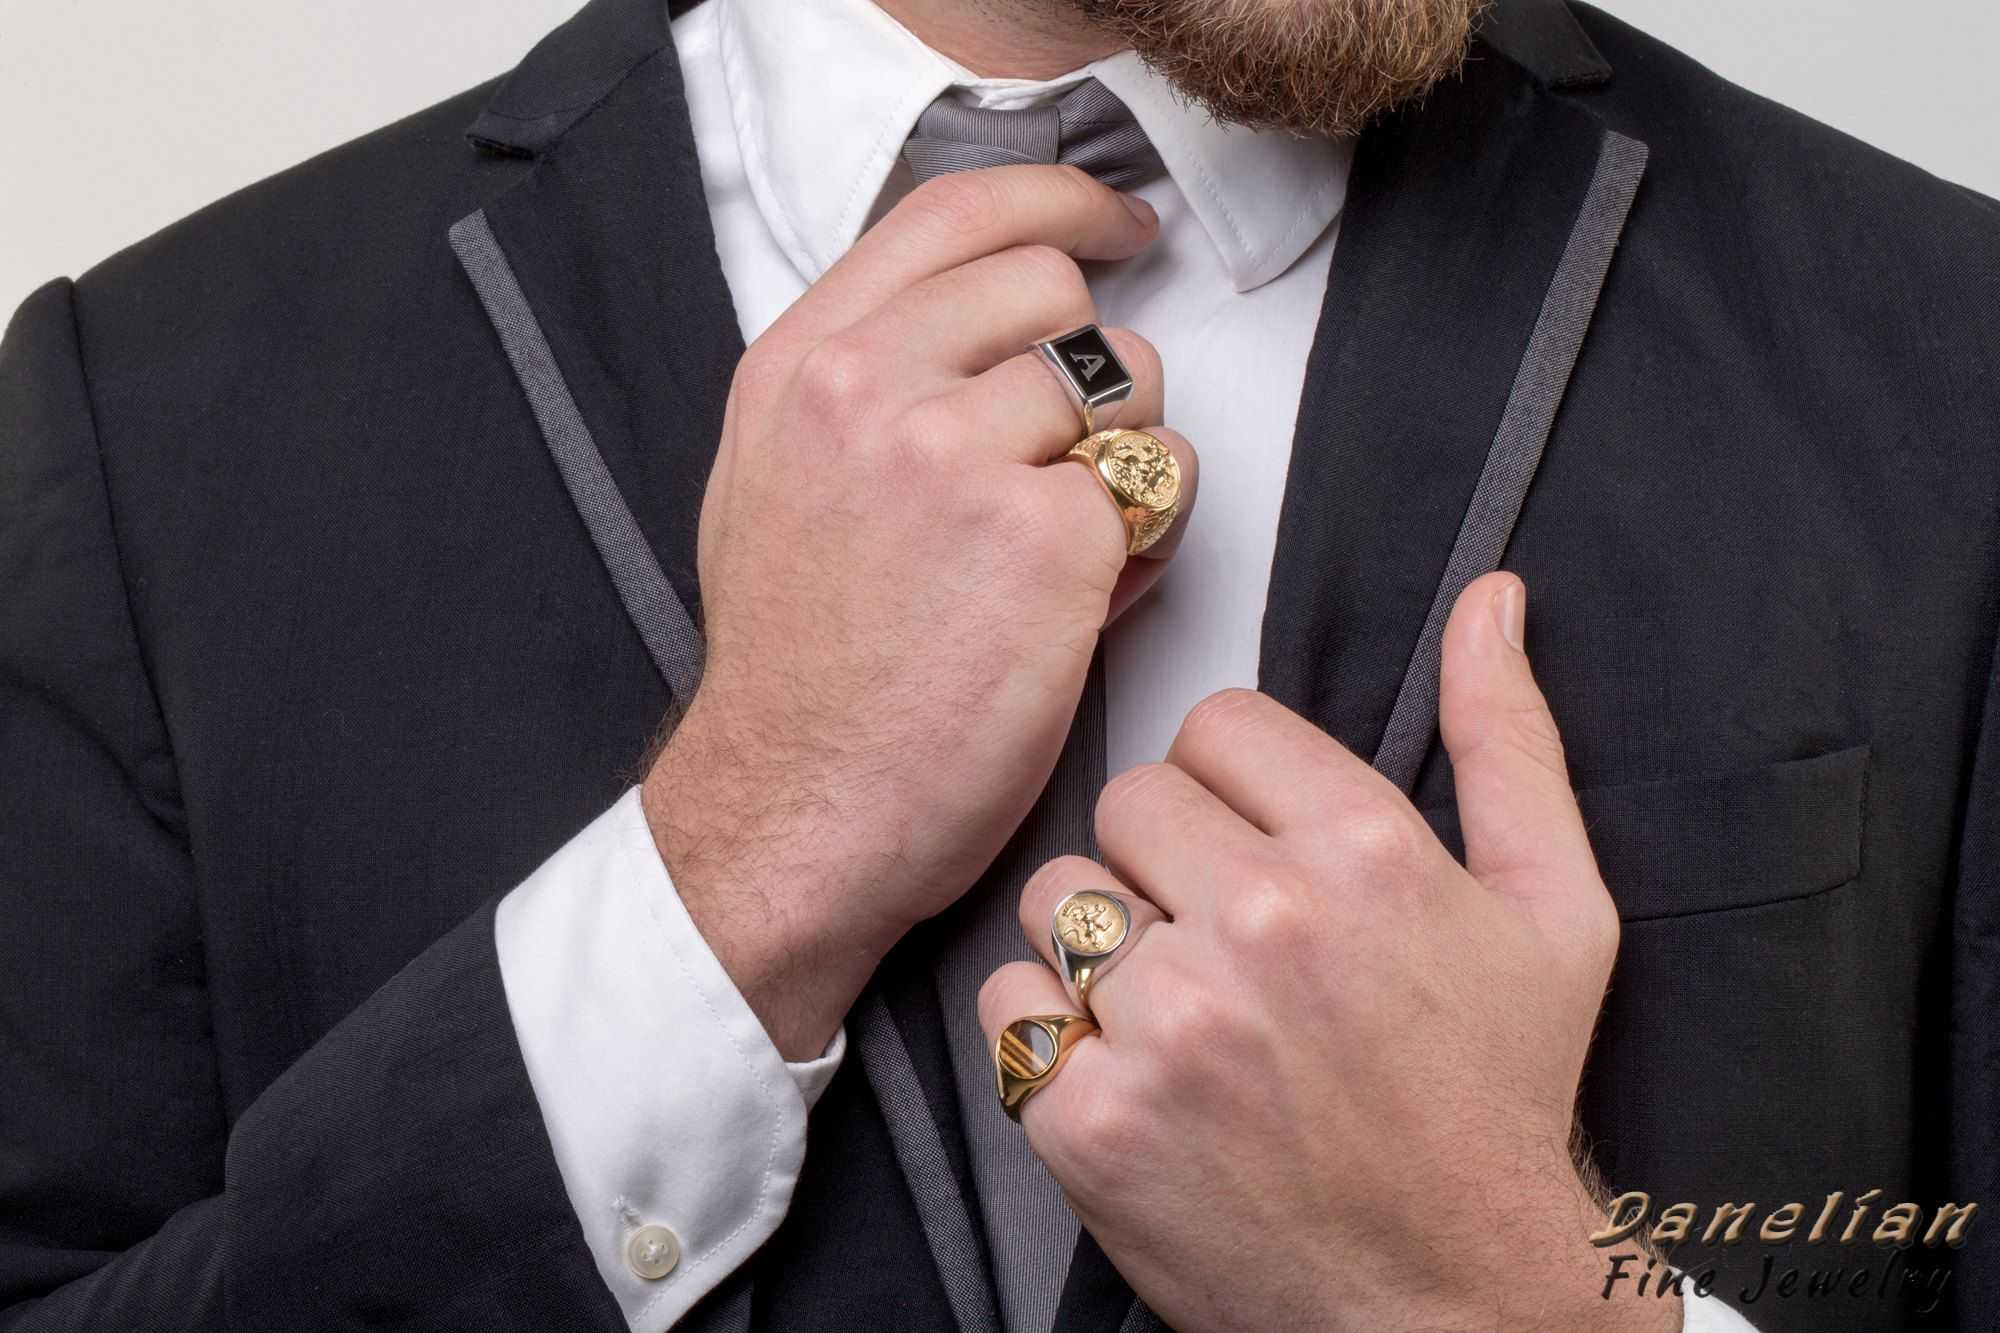 На каком пальце мужчины носят печатки: на мизинце, указательном, среднем, безымянном, на большом